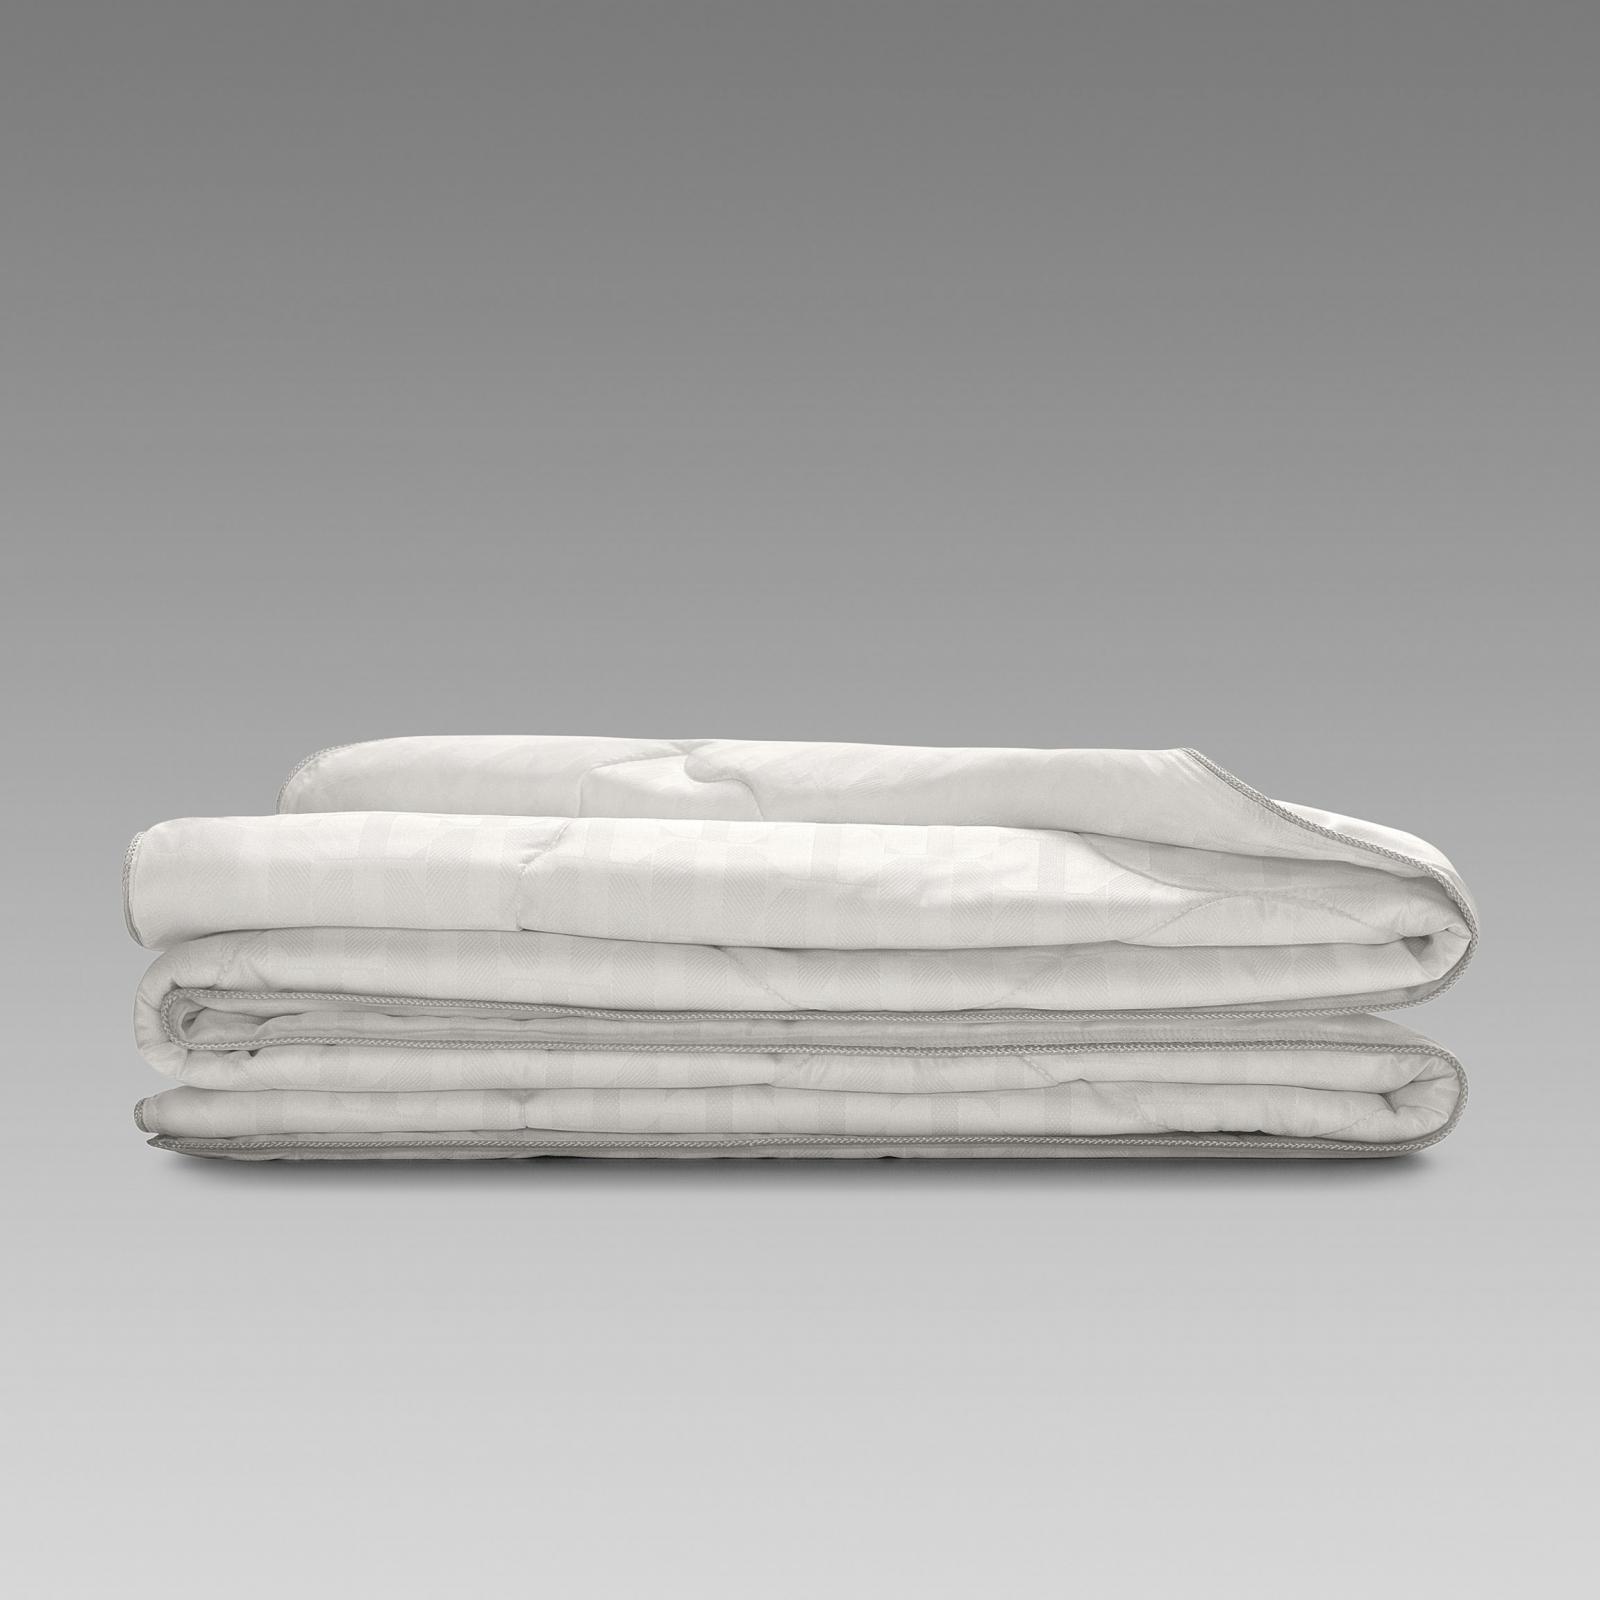 Одеяло Togas Инфинити 200х210 см (20.04.16.0110), цвет белый, размер 200х210 см - фото 2